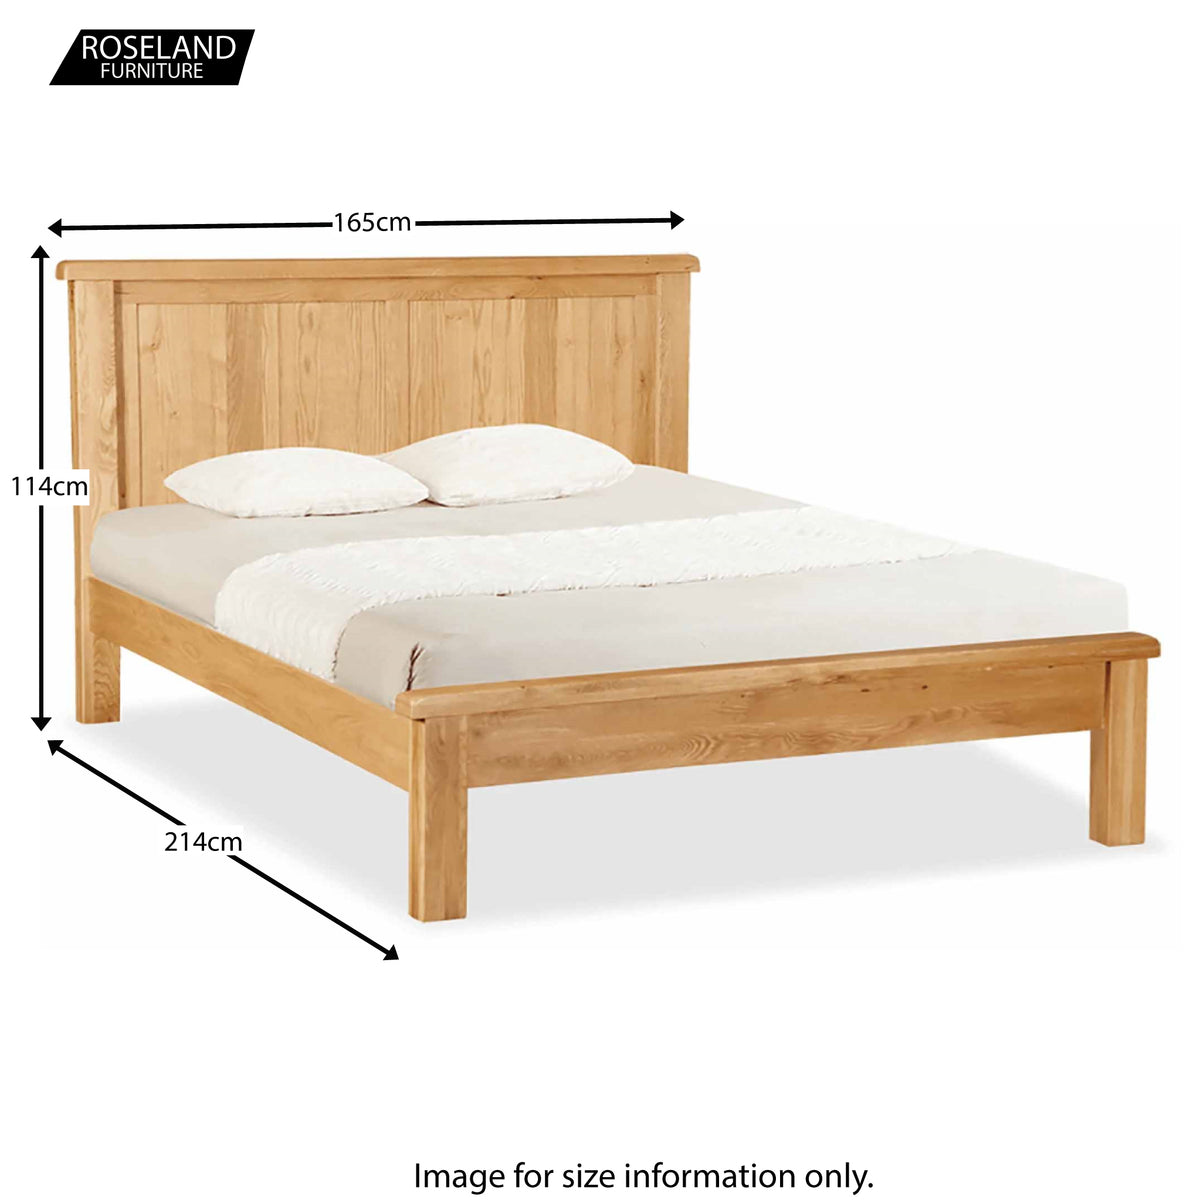 Zelak Oak Panelled 5ft king size Bed from Roseland furniture